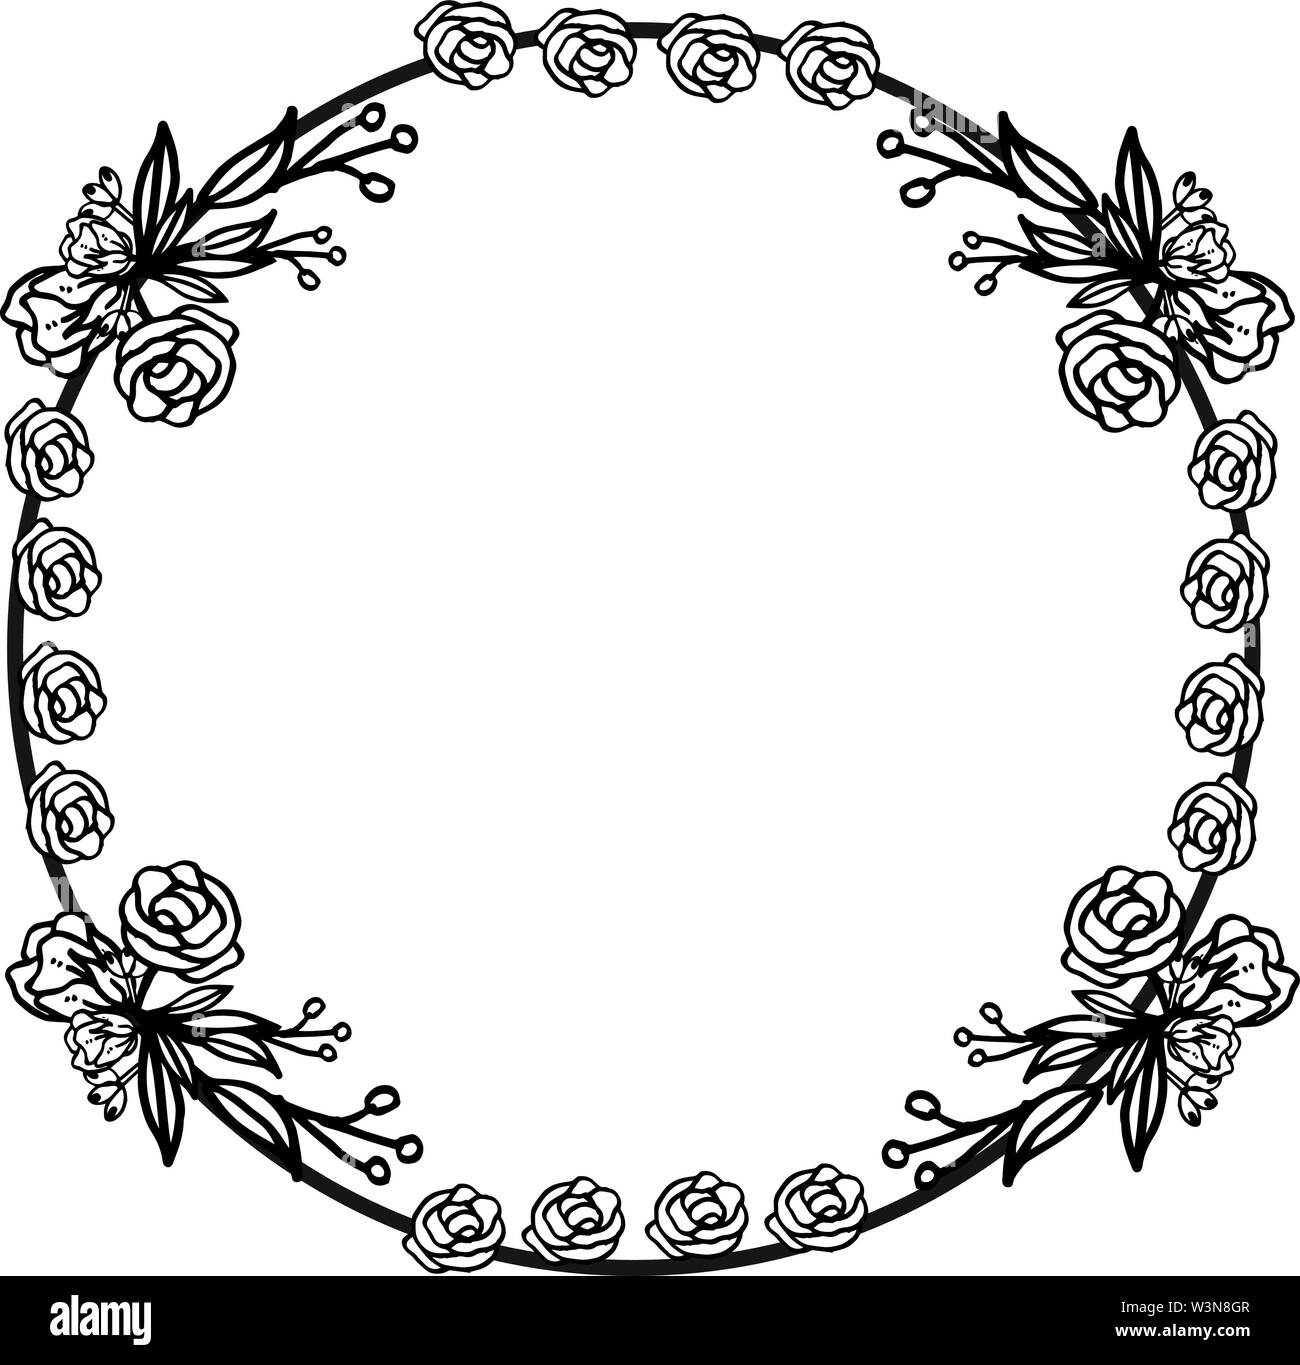 Black and white rose flower frame template. Vector illustration ...